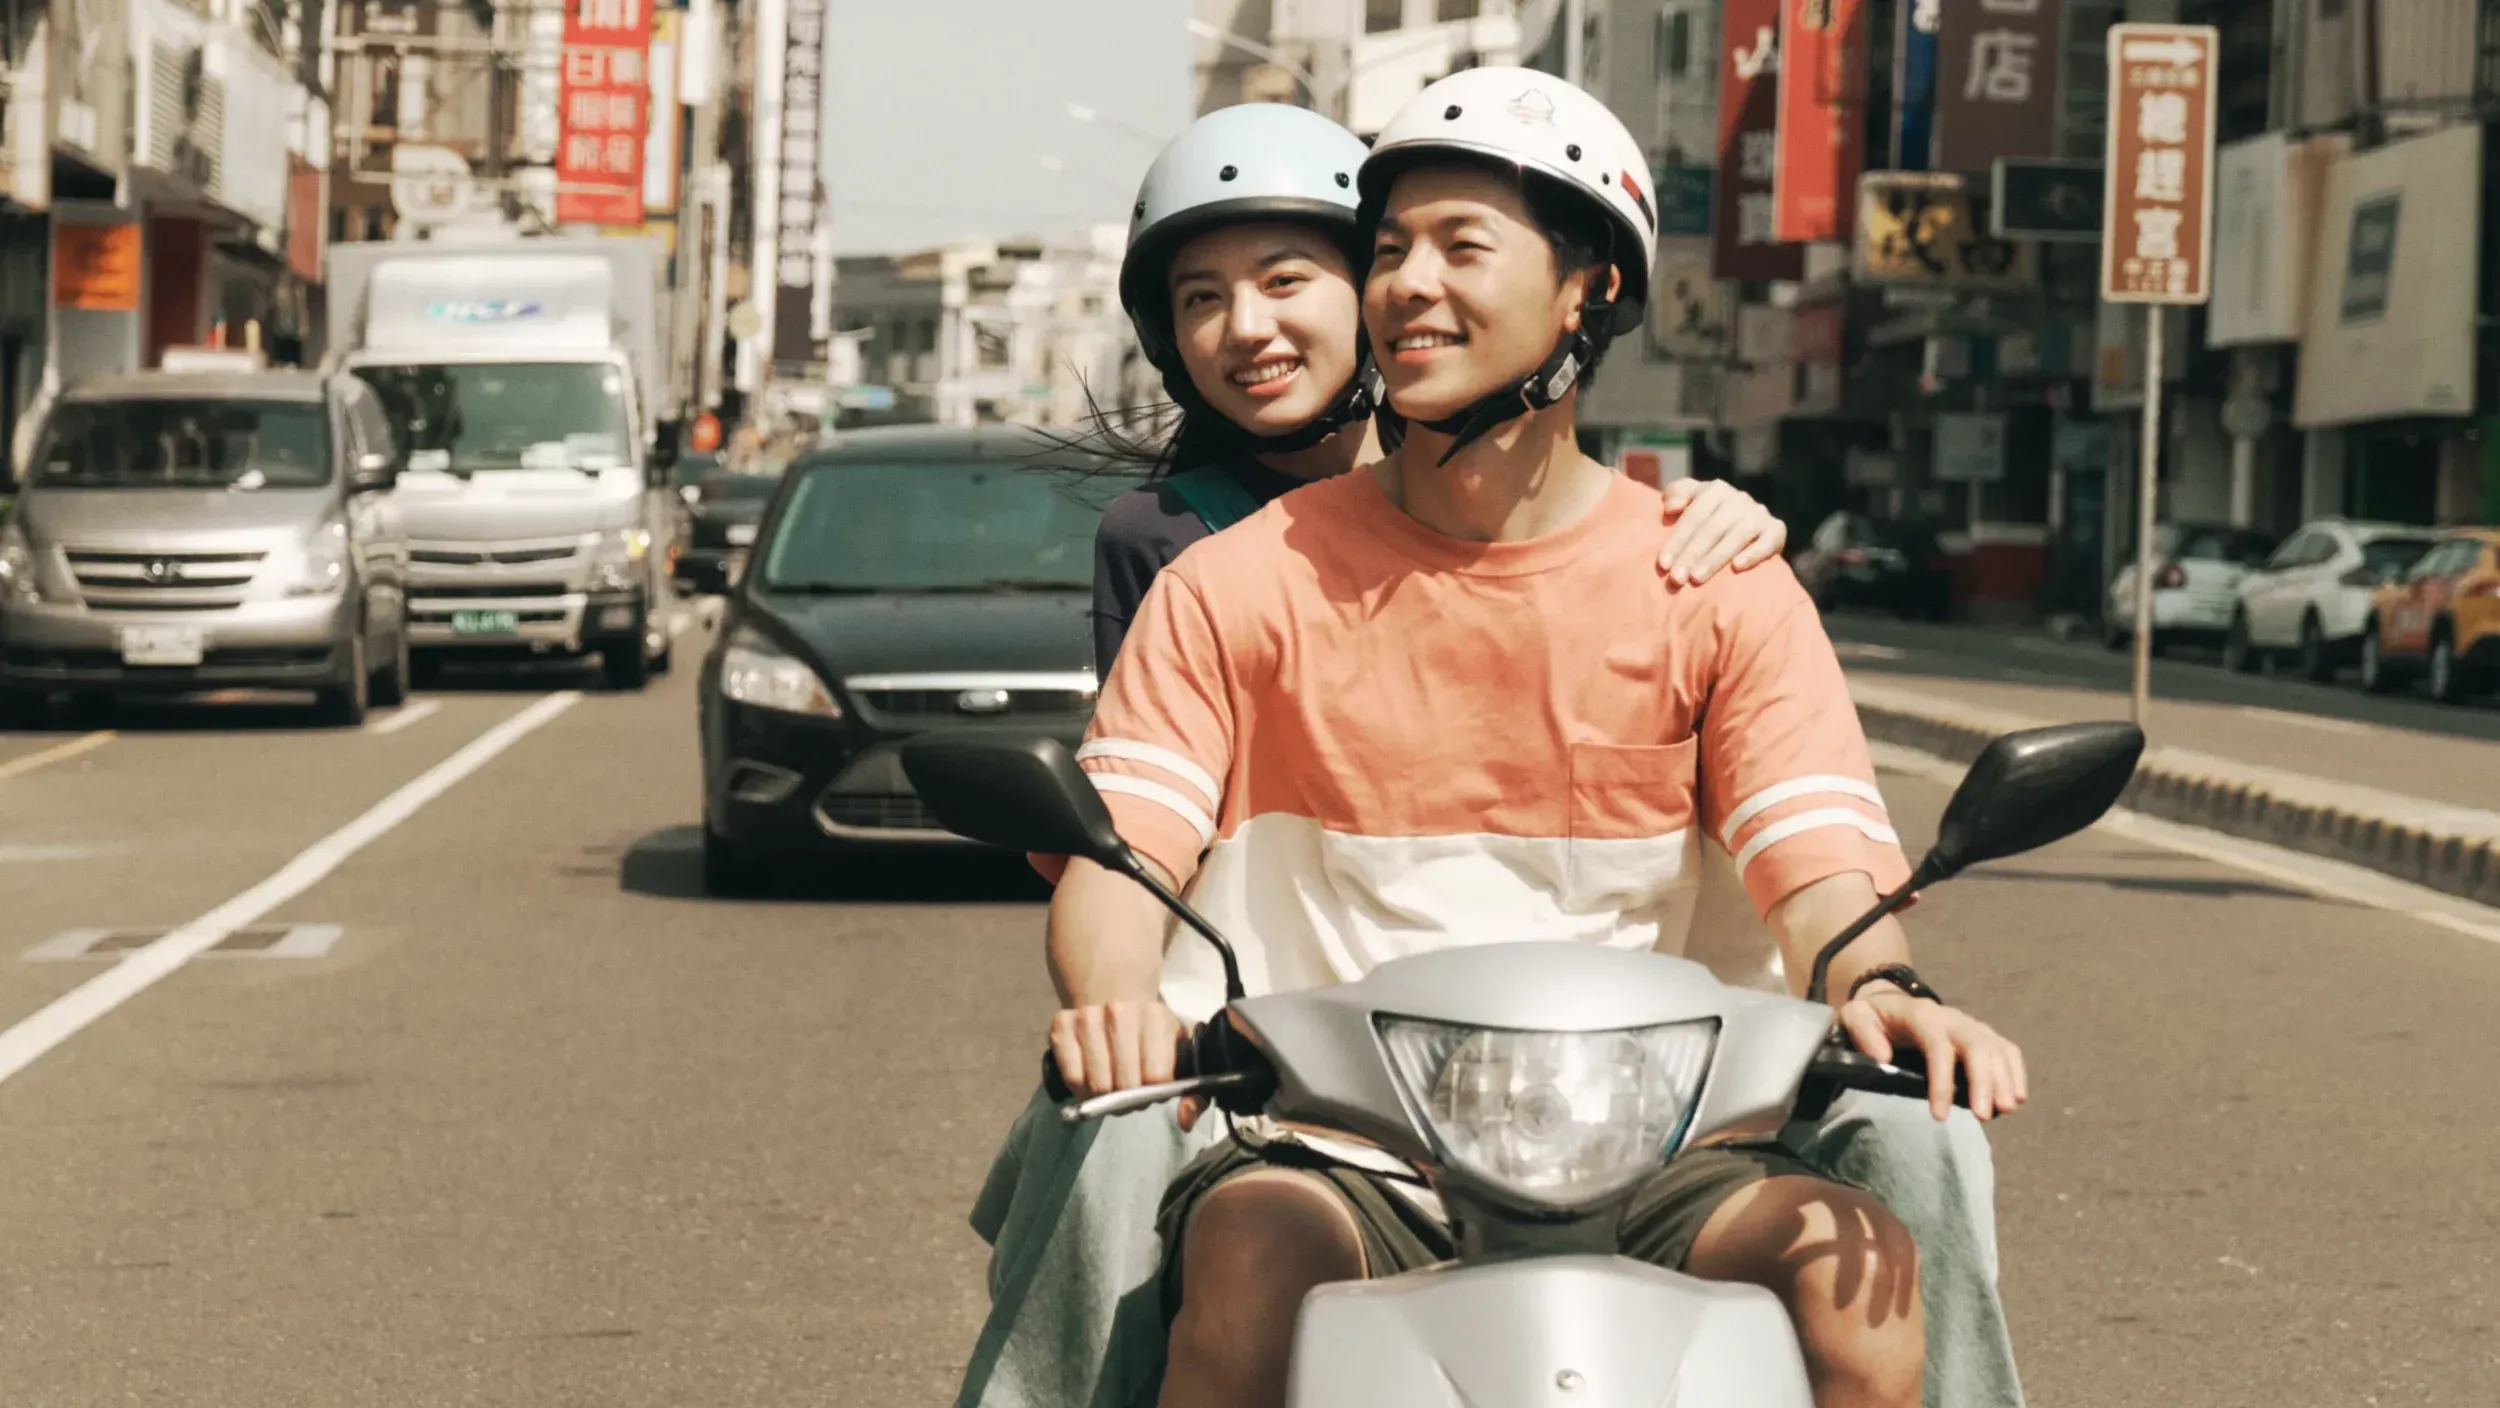 Review phim Thanh Xuân 18×2: Lữ Trình Hướng Về Em – Phải xem